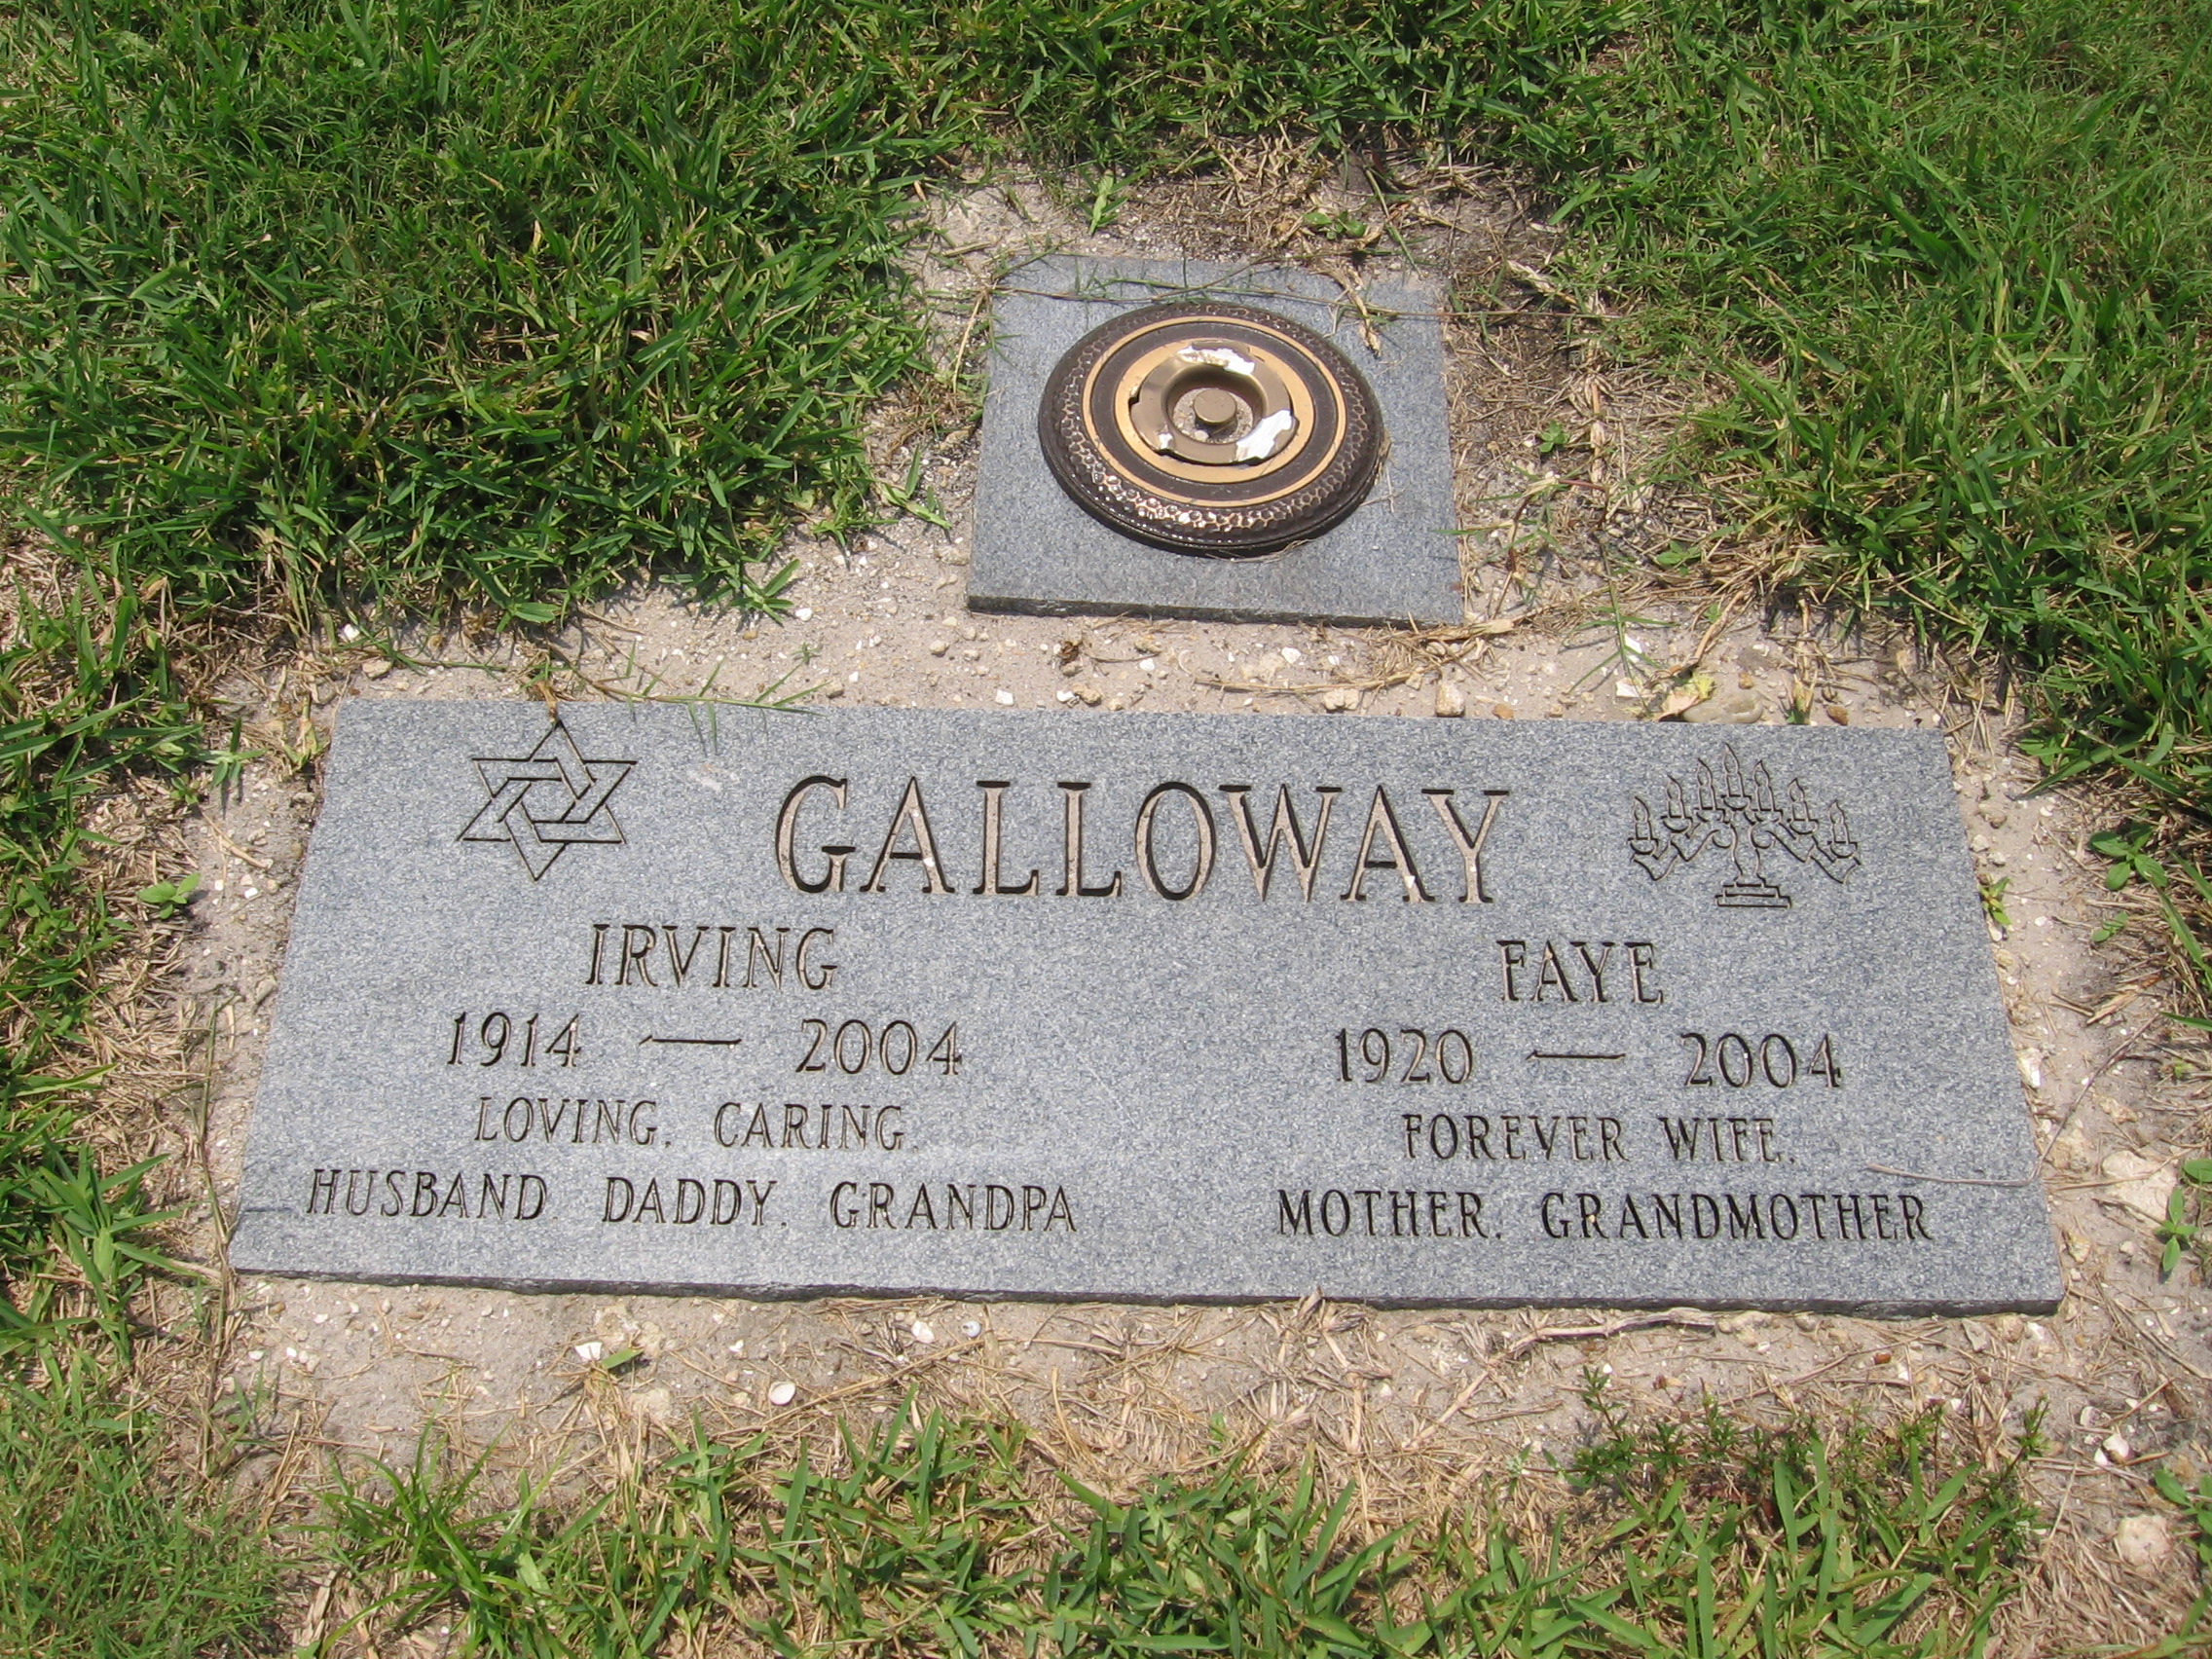 Irving Galloway